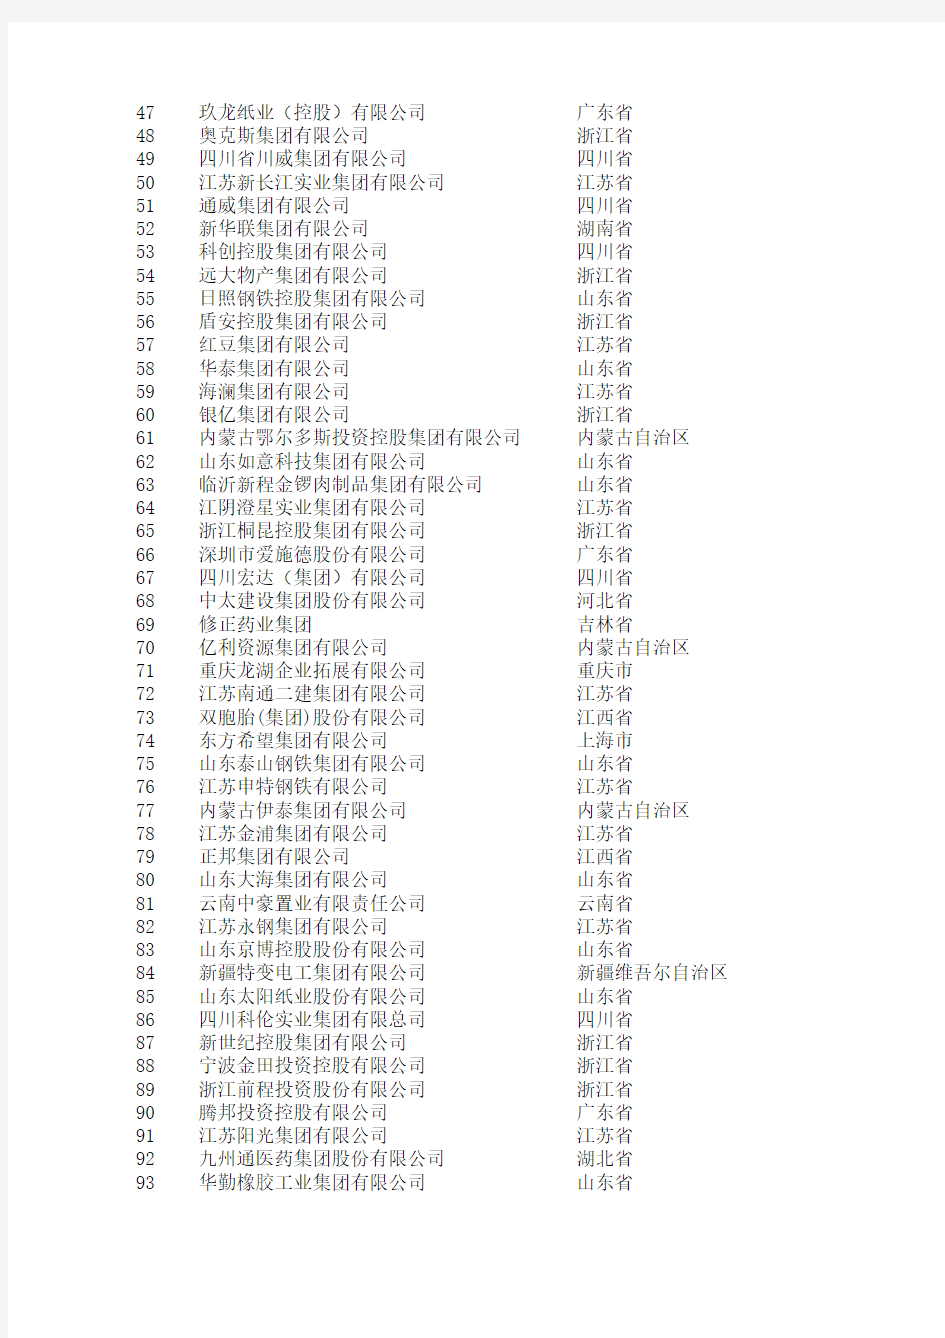 2014中国民营企业500强榜单